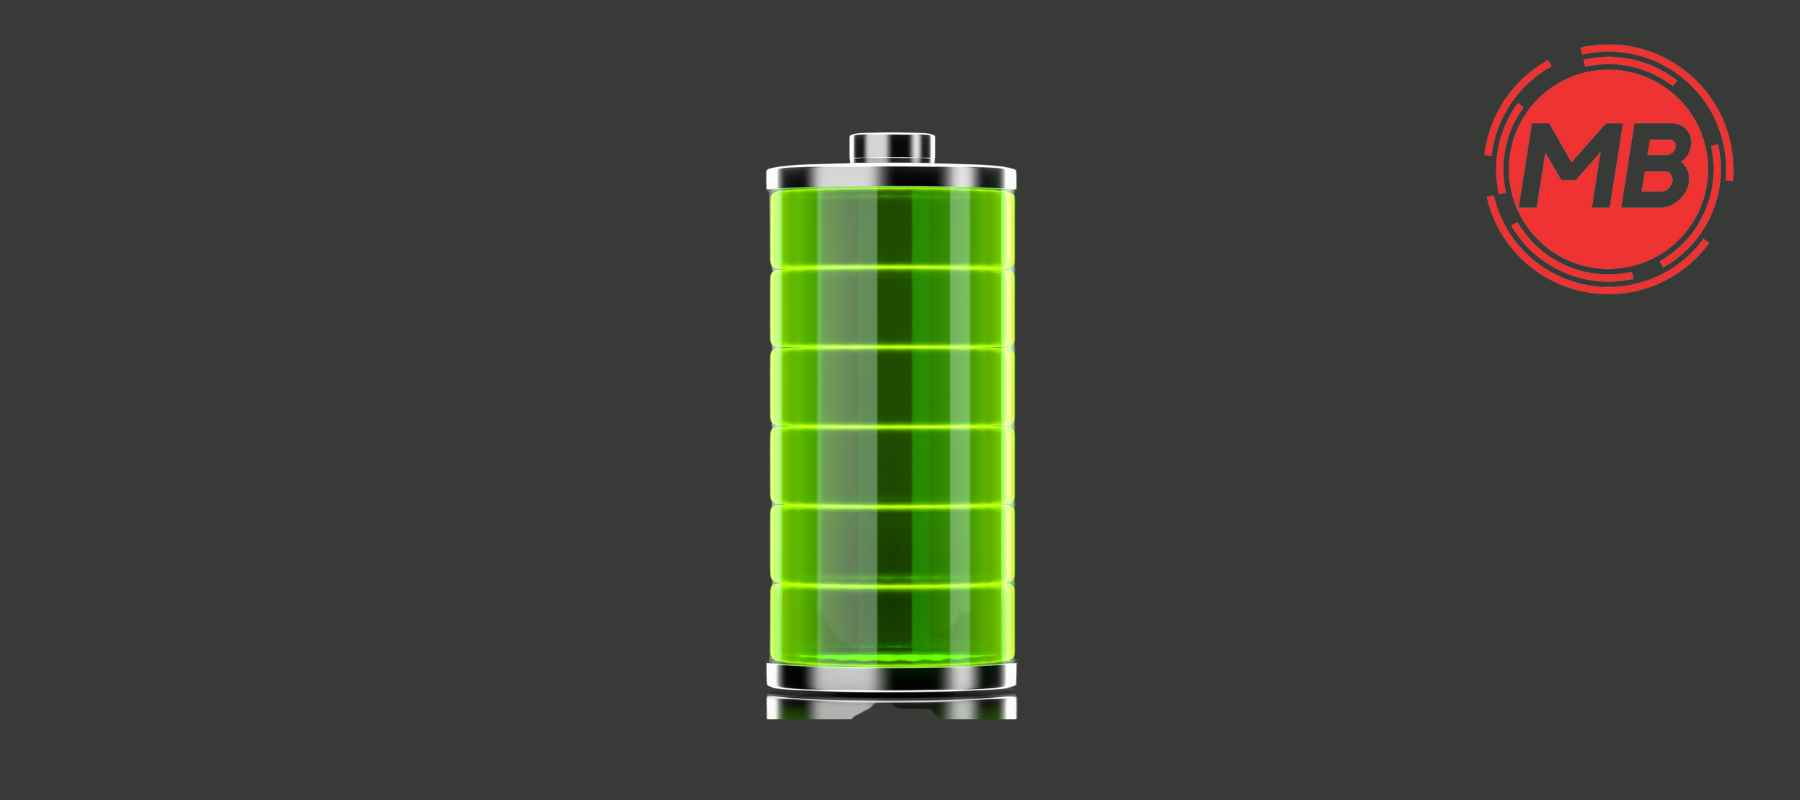 batterie booster au lithium ion (Li-ion) chargée